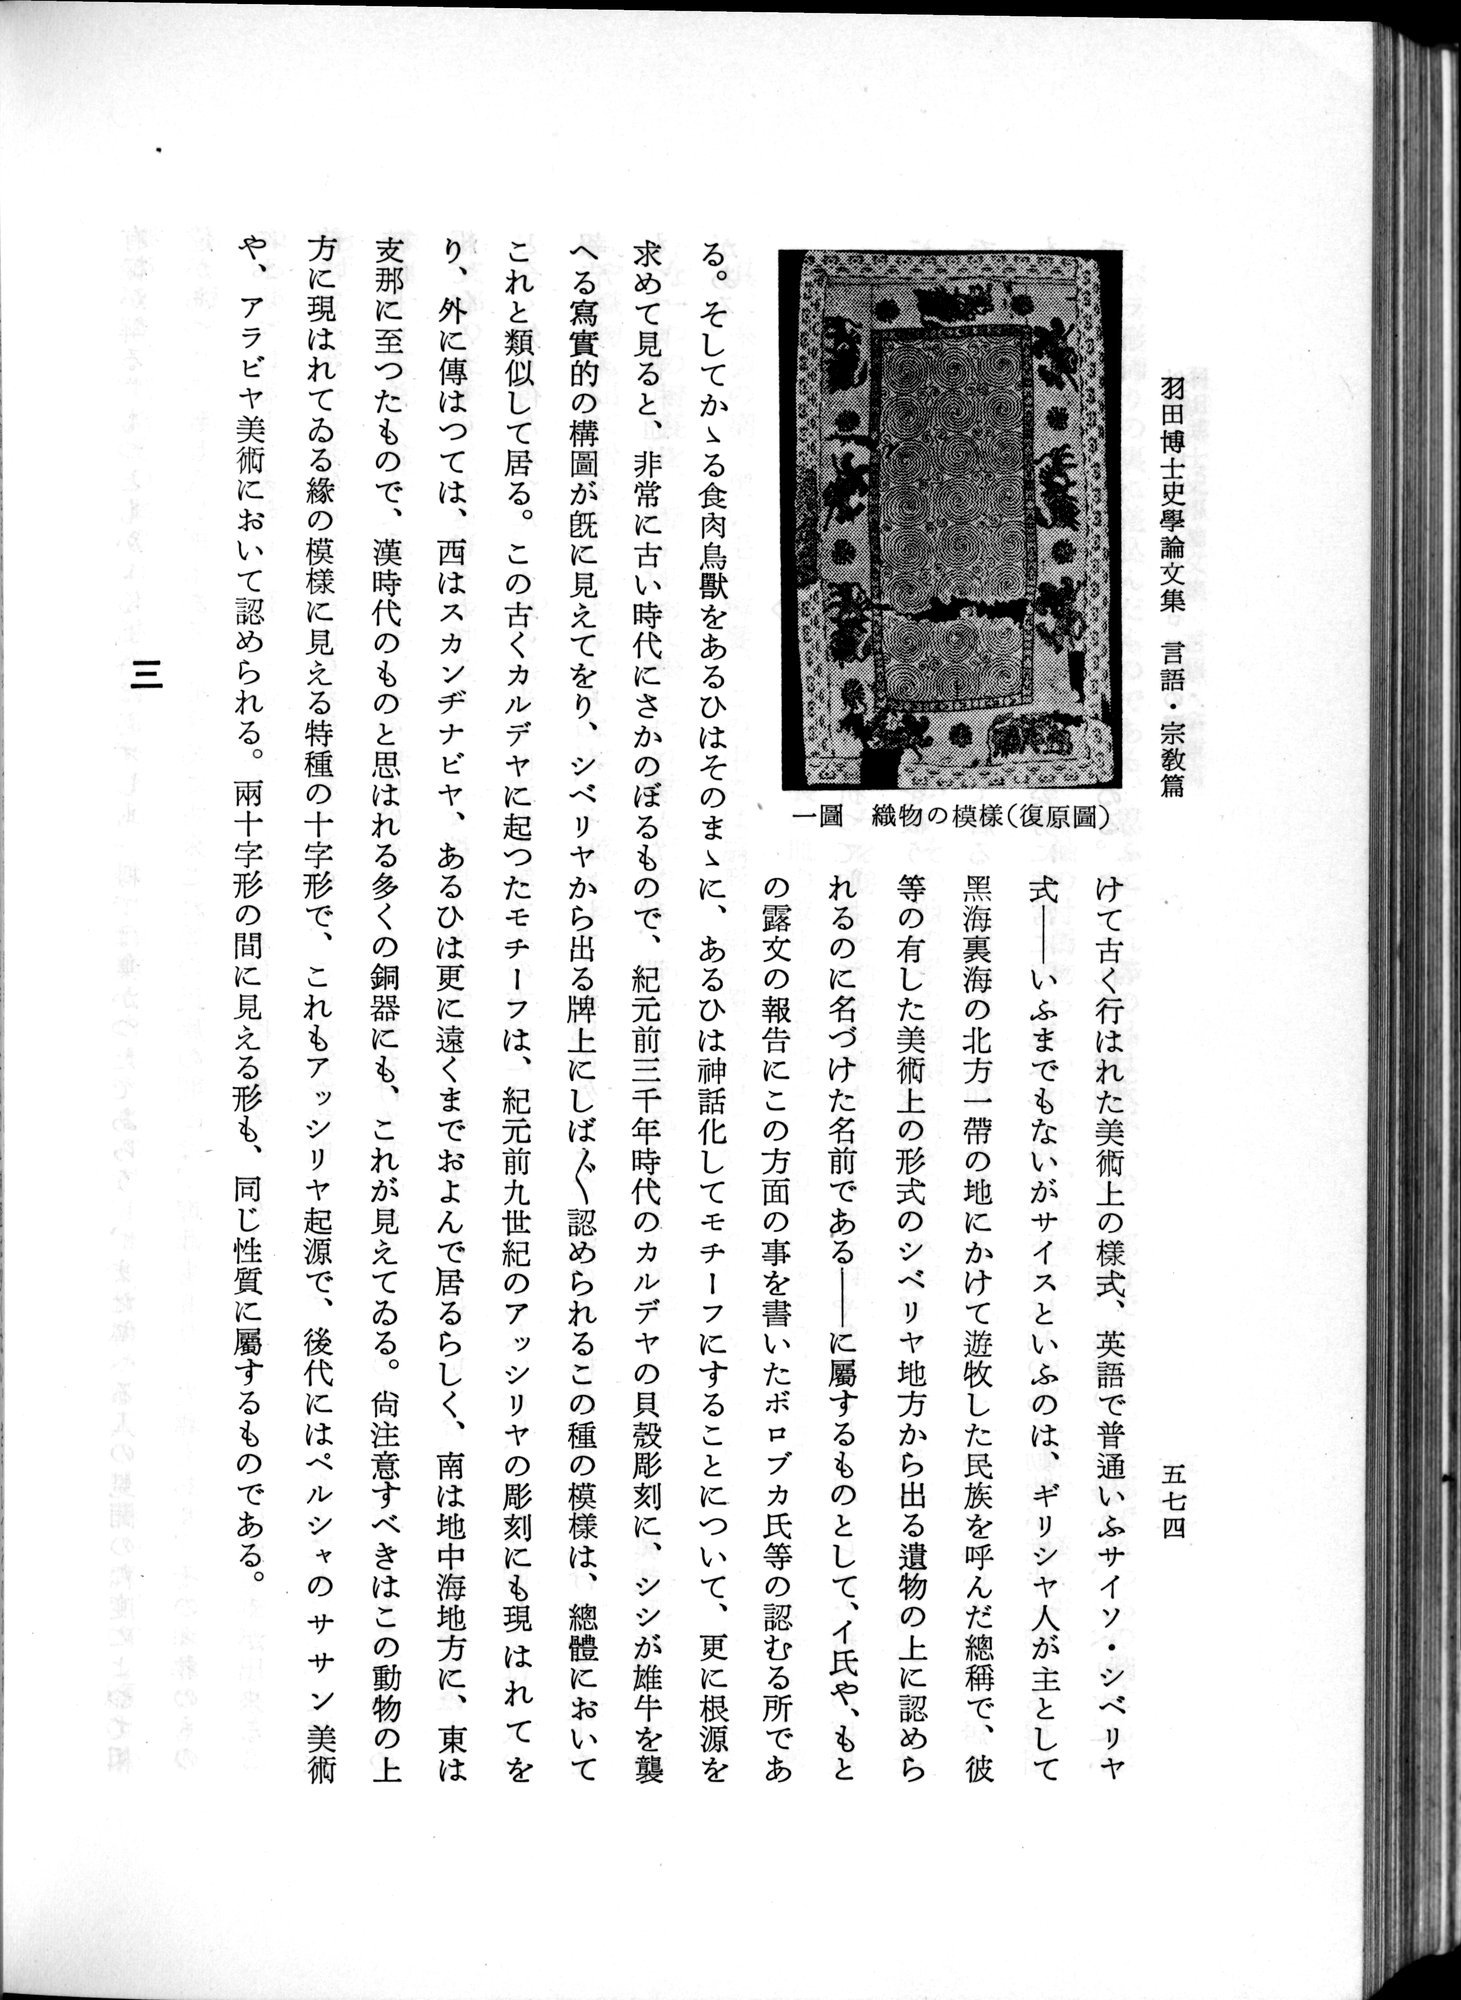 羽田博士史学論文集 : vol.2 / Page 636 (Grayscale High Resolution Image)